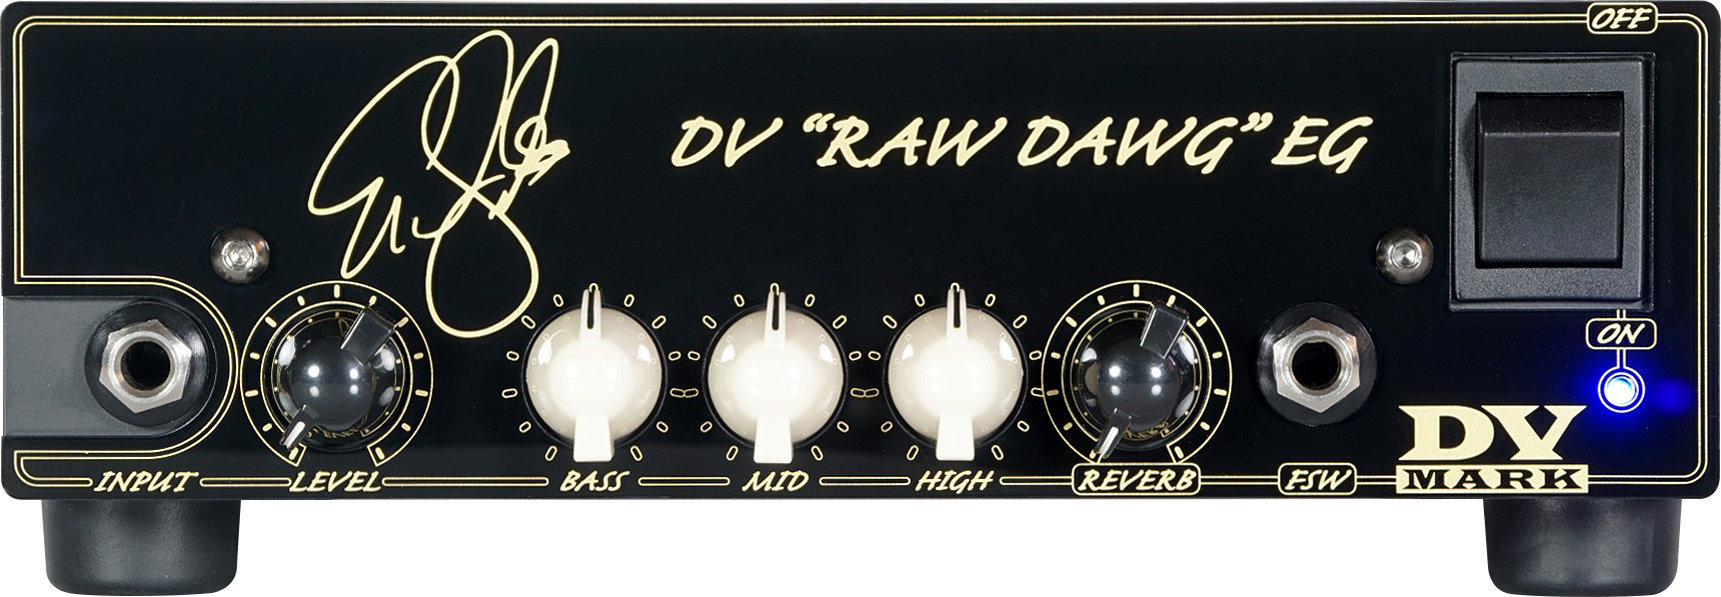 Hybrid Amplifier DV Mark DV Raw Dawg EG